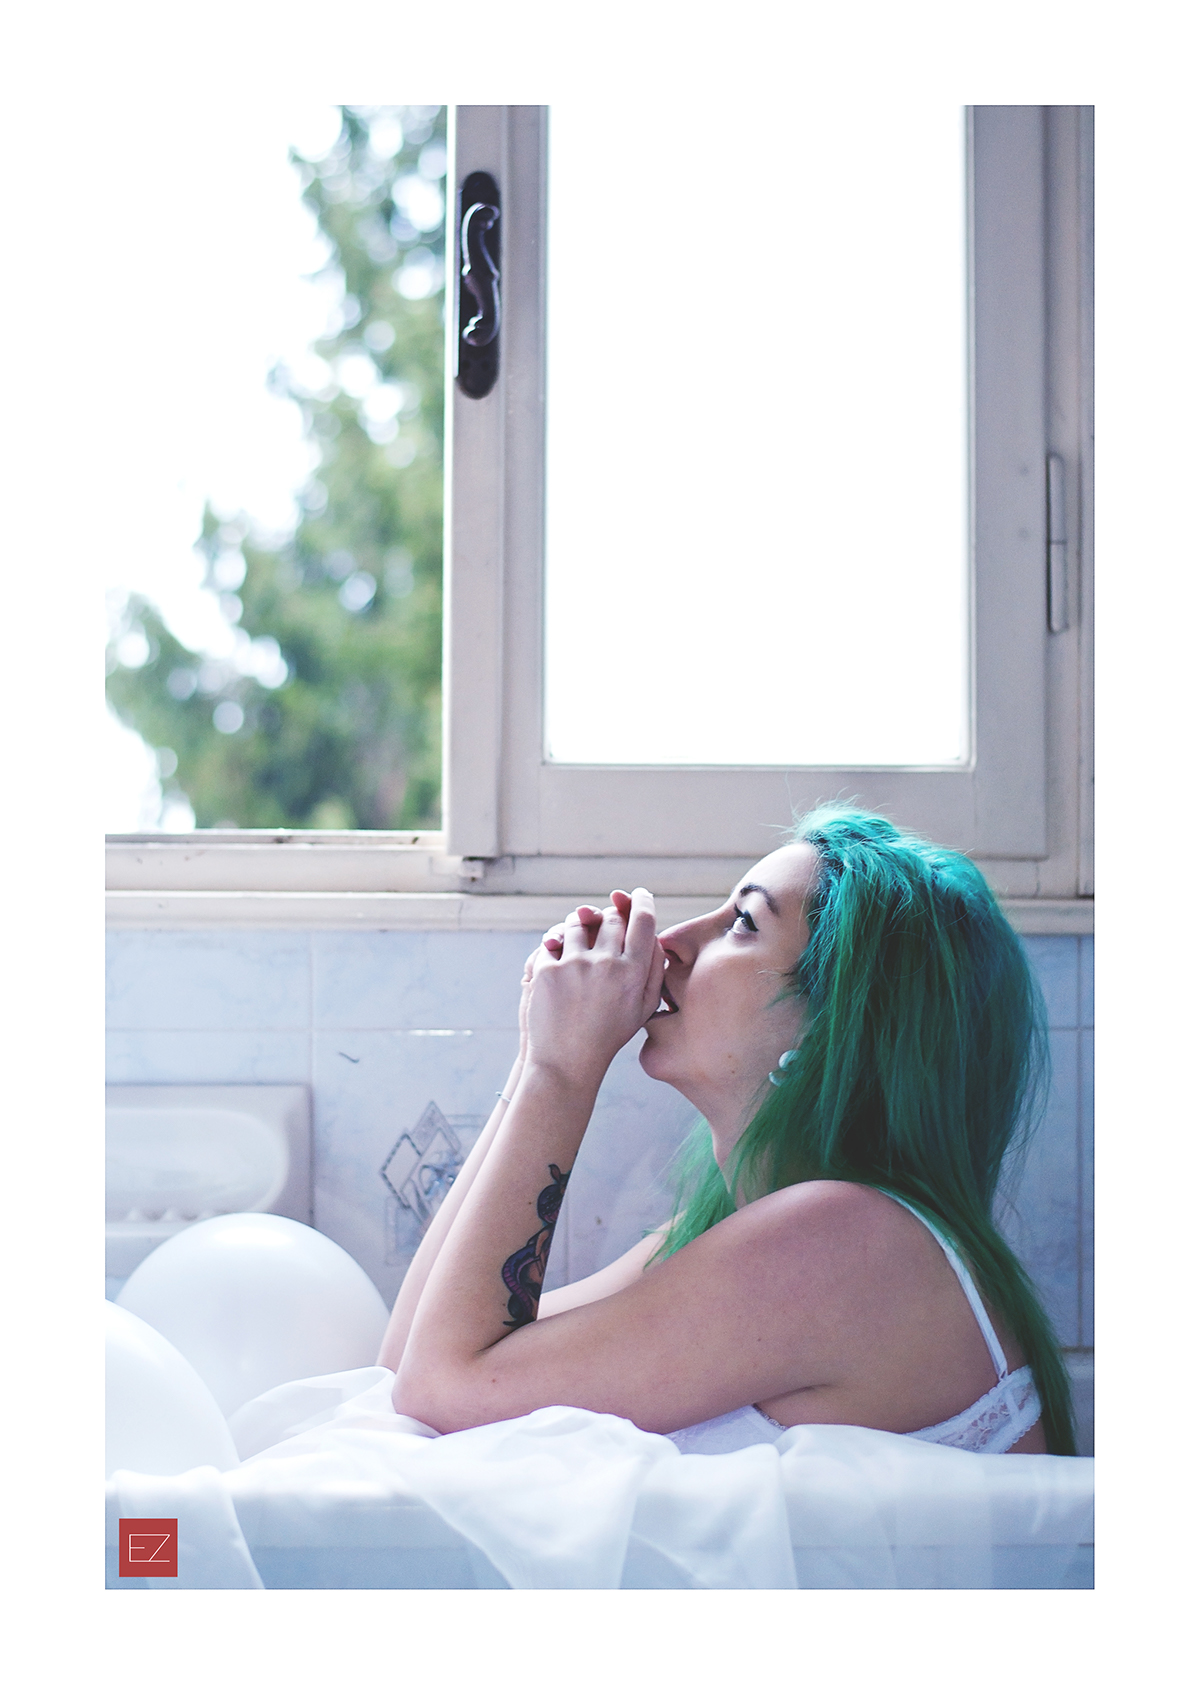 hopefulsuicidegirl suicidegirl nude greenhair model girl Window bath